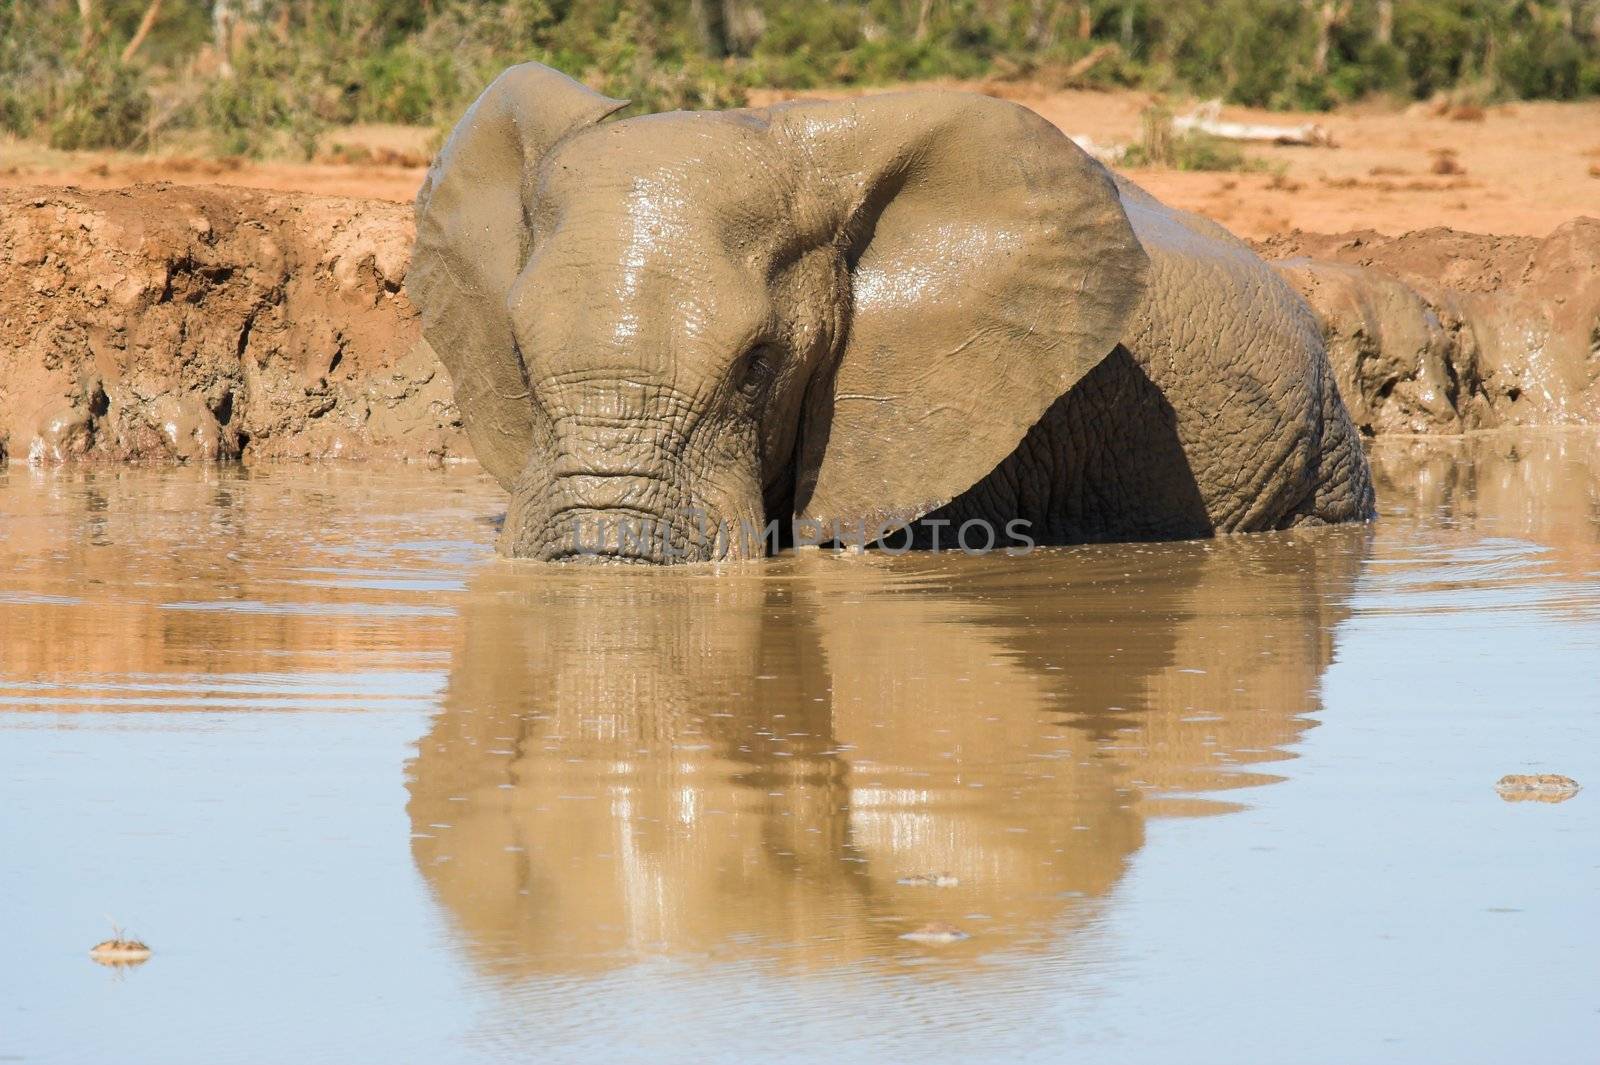 Elephant bath by nightowlza